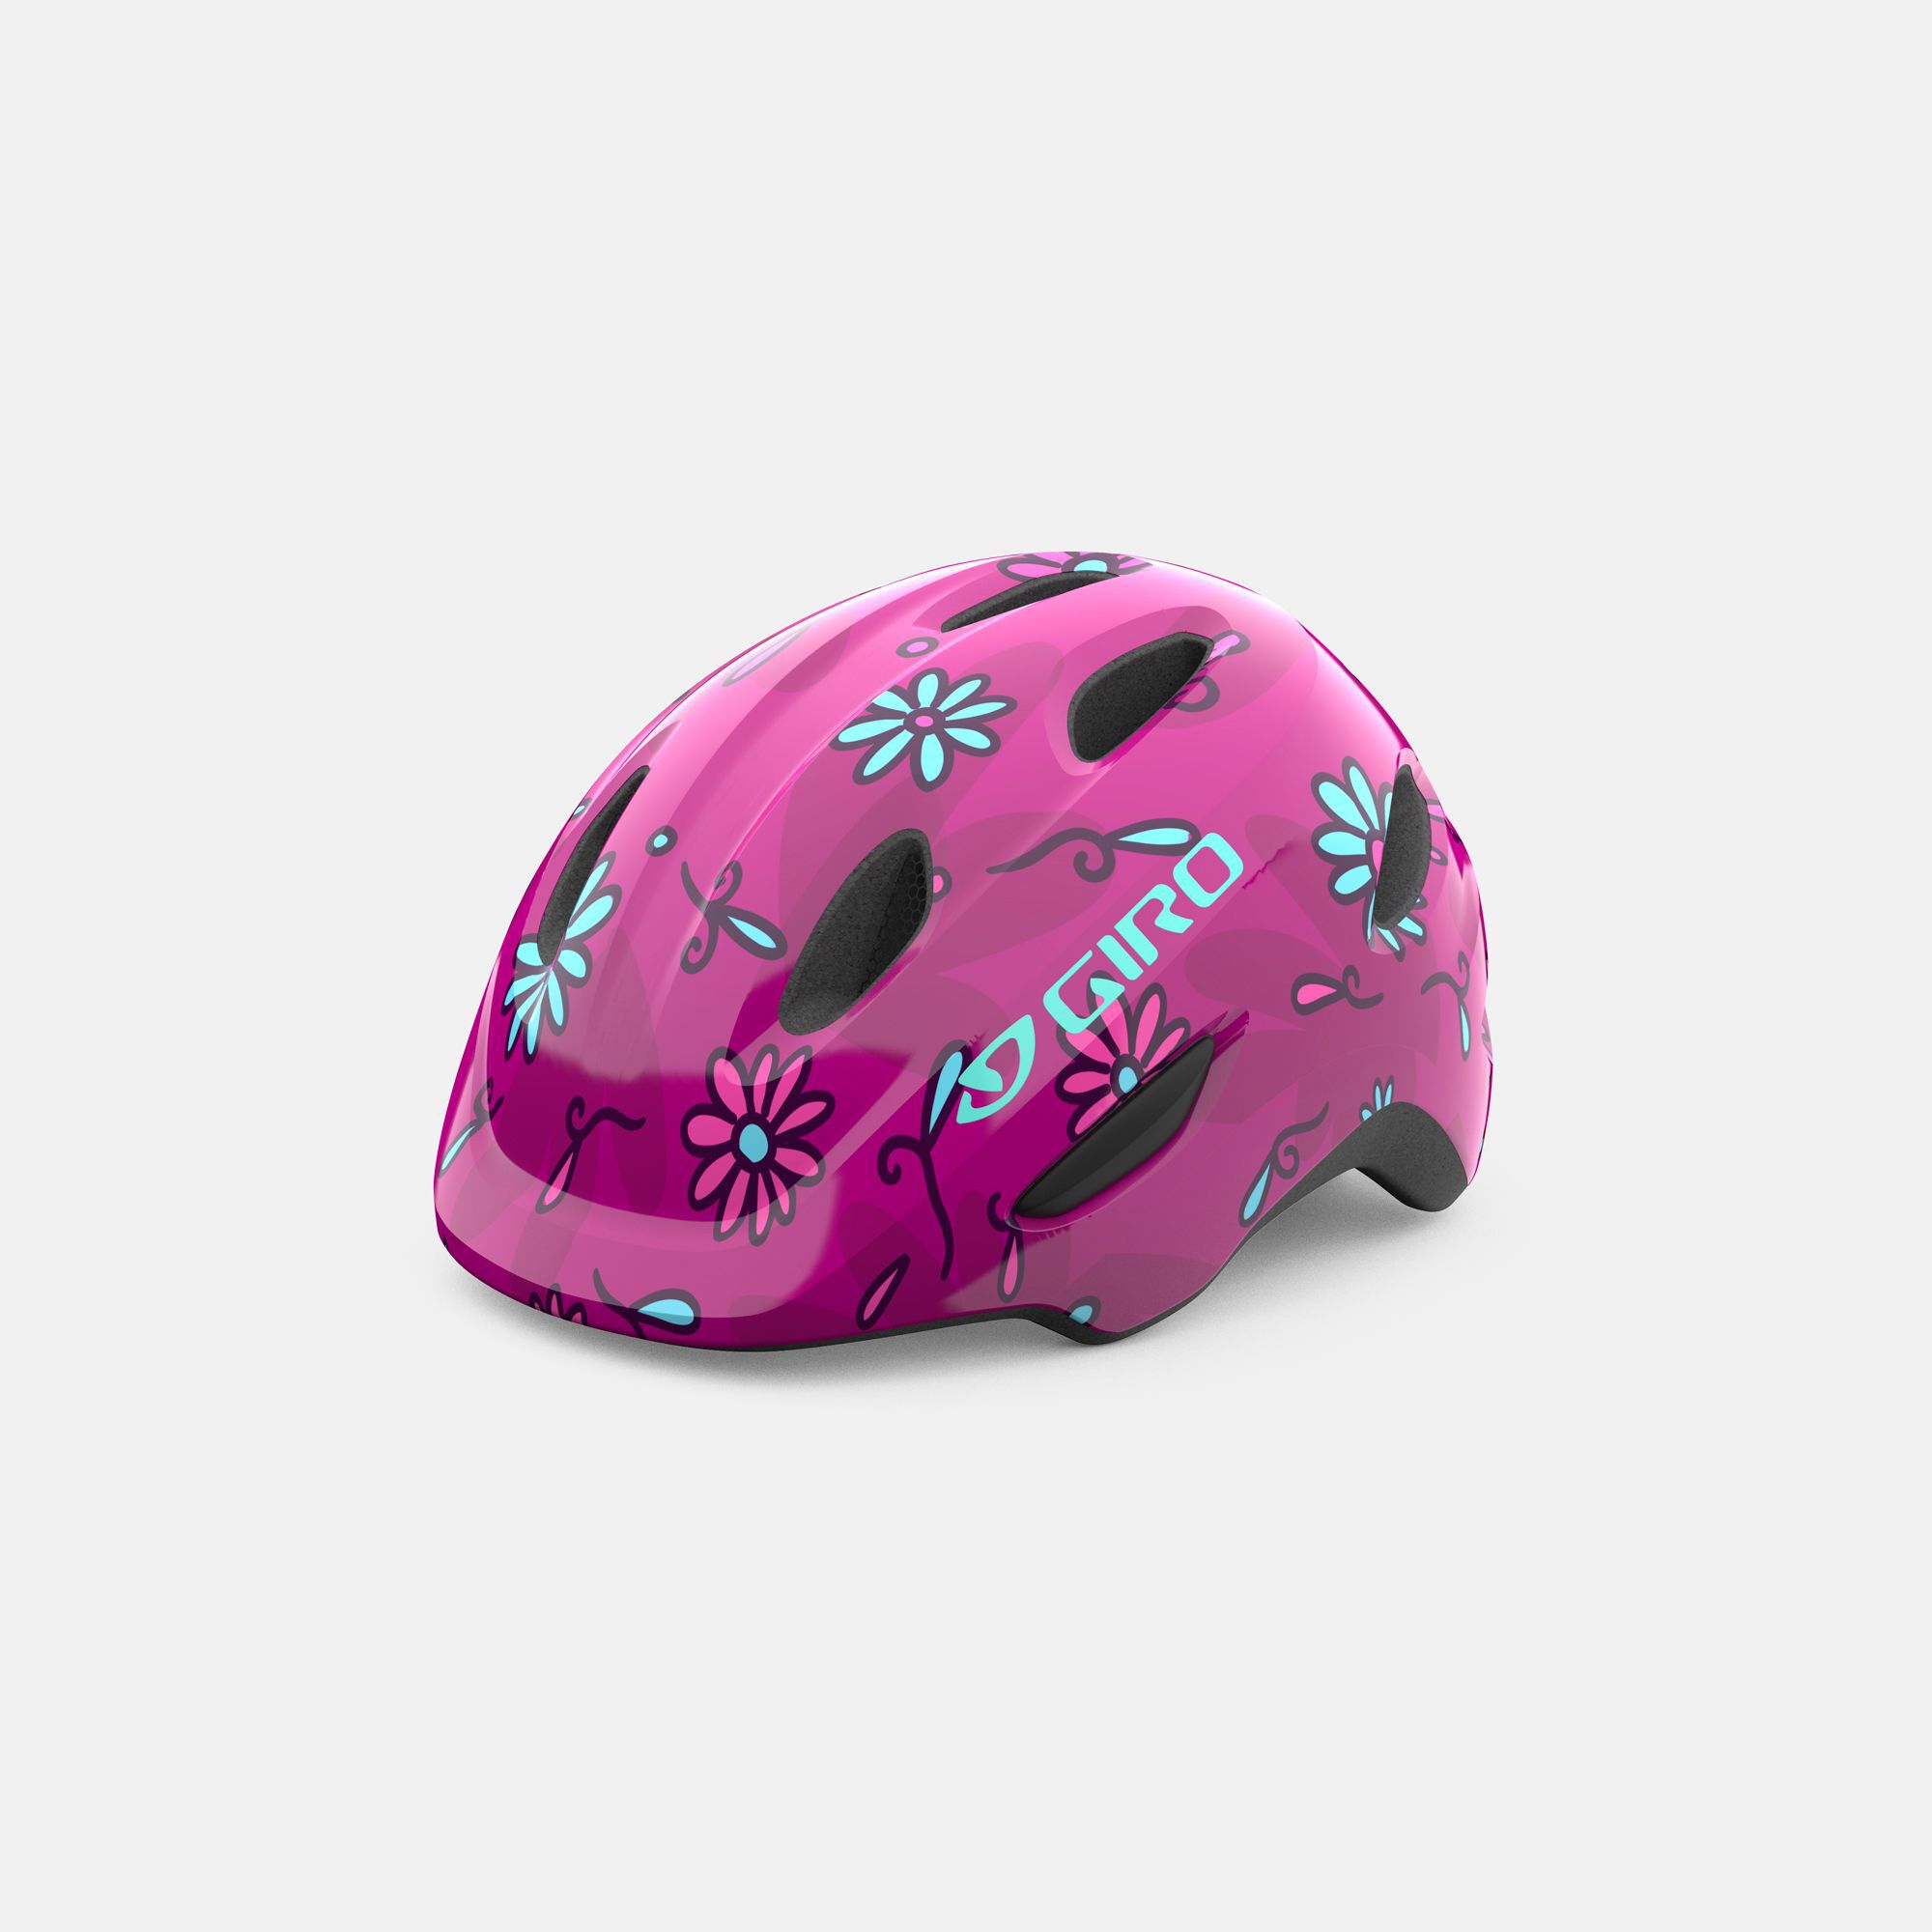 Giro Scamp Kinder Fahrrad Helm grün 2019 